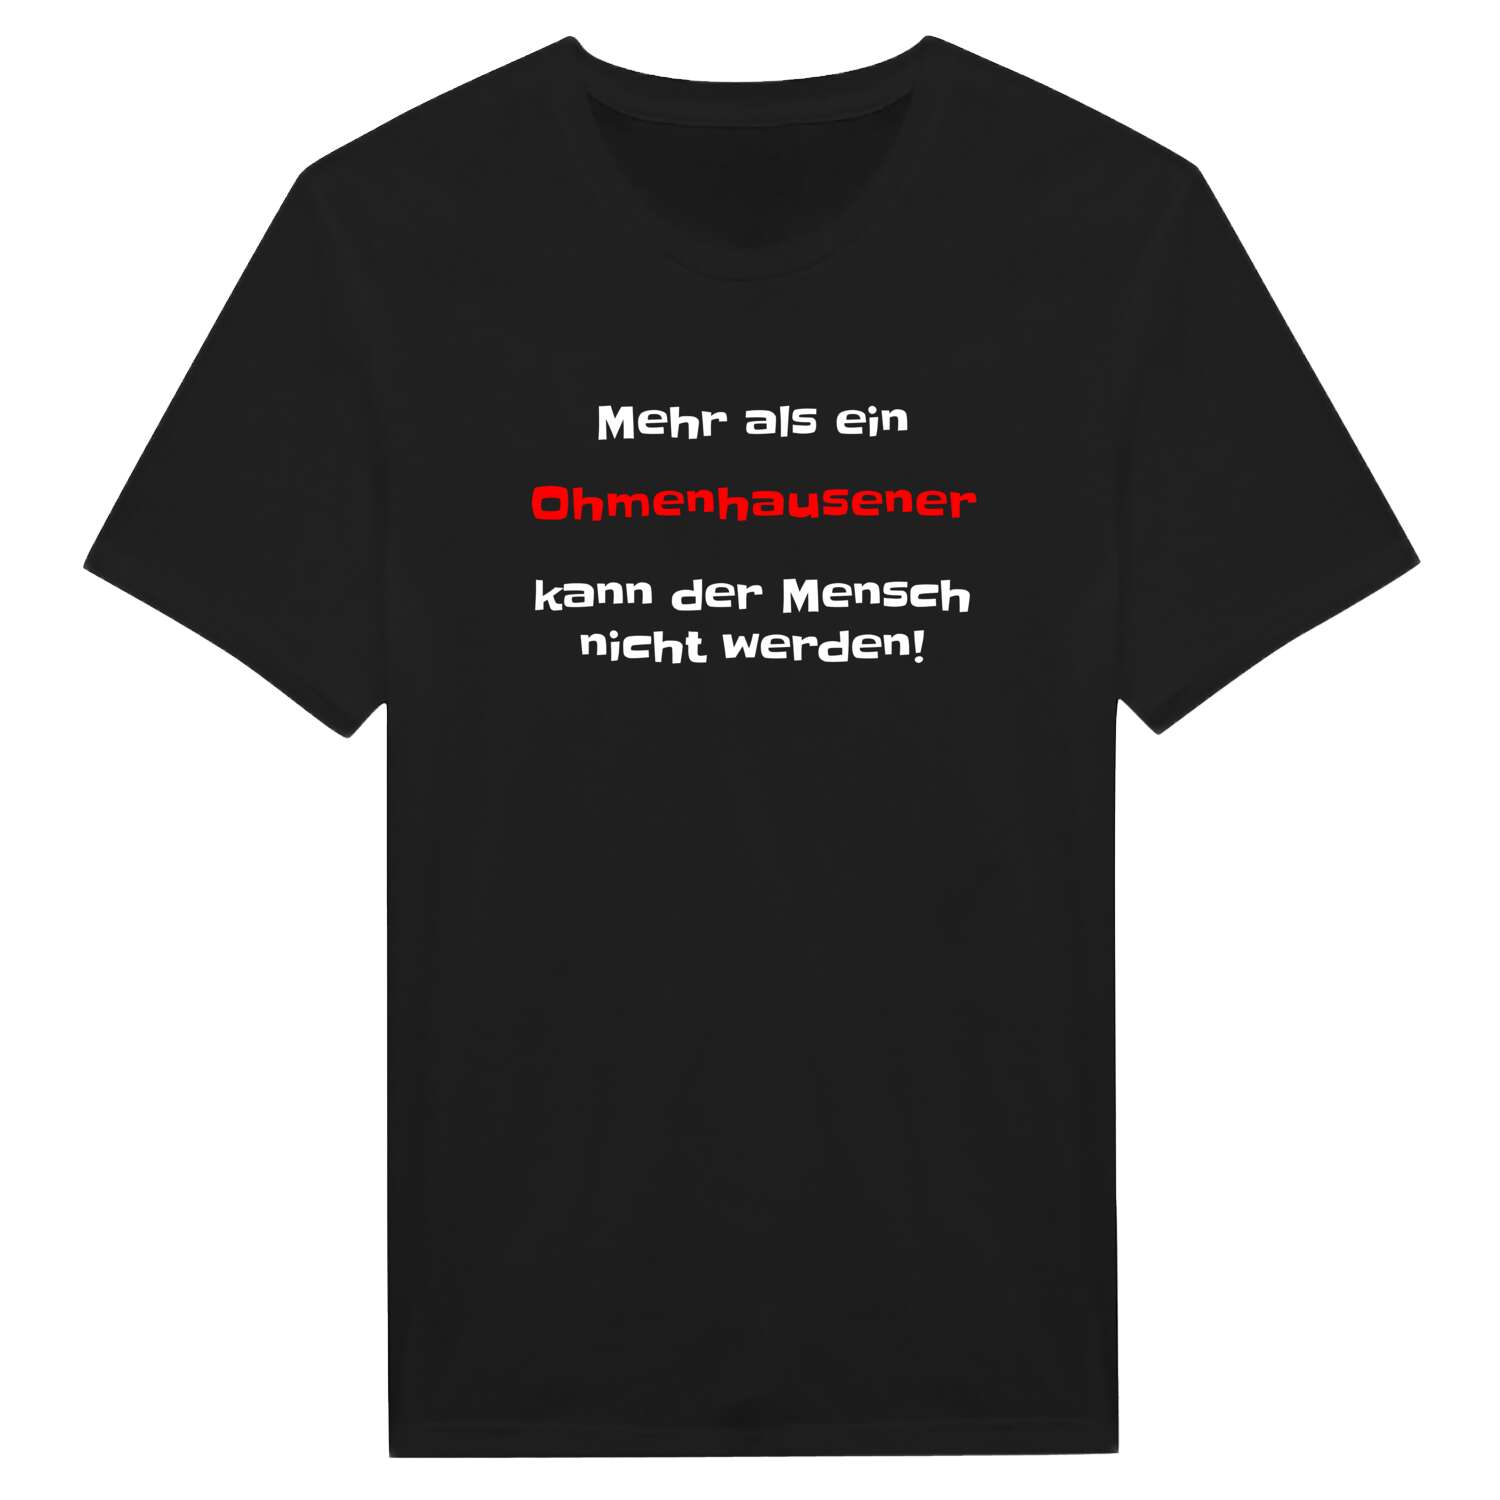 Ohmenhausen T-Shirt »Mehr als ein«